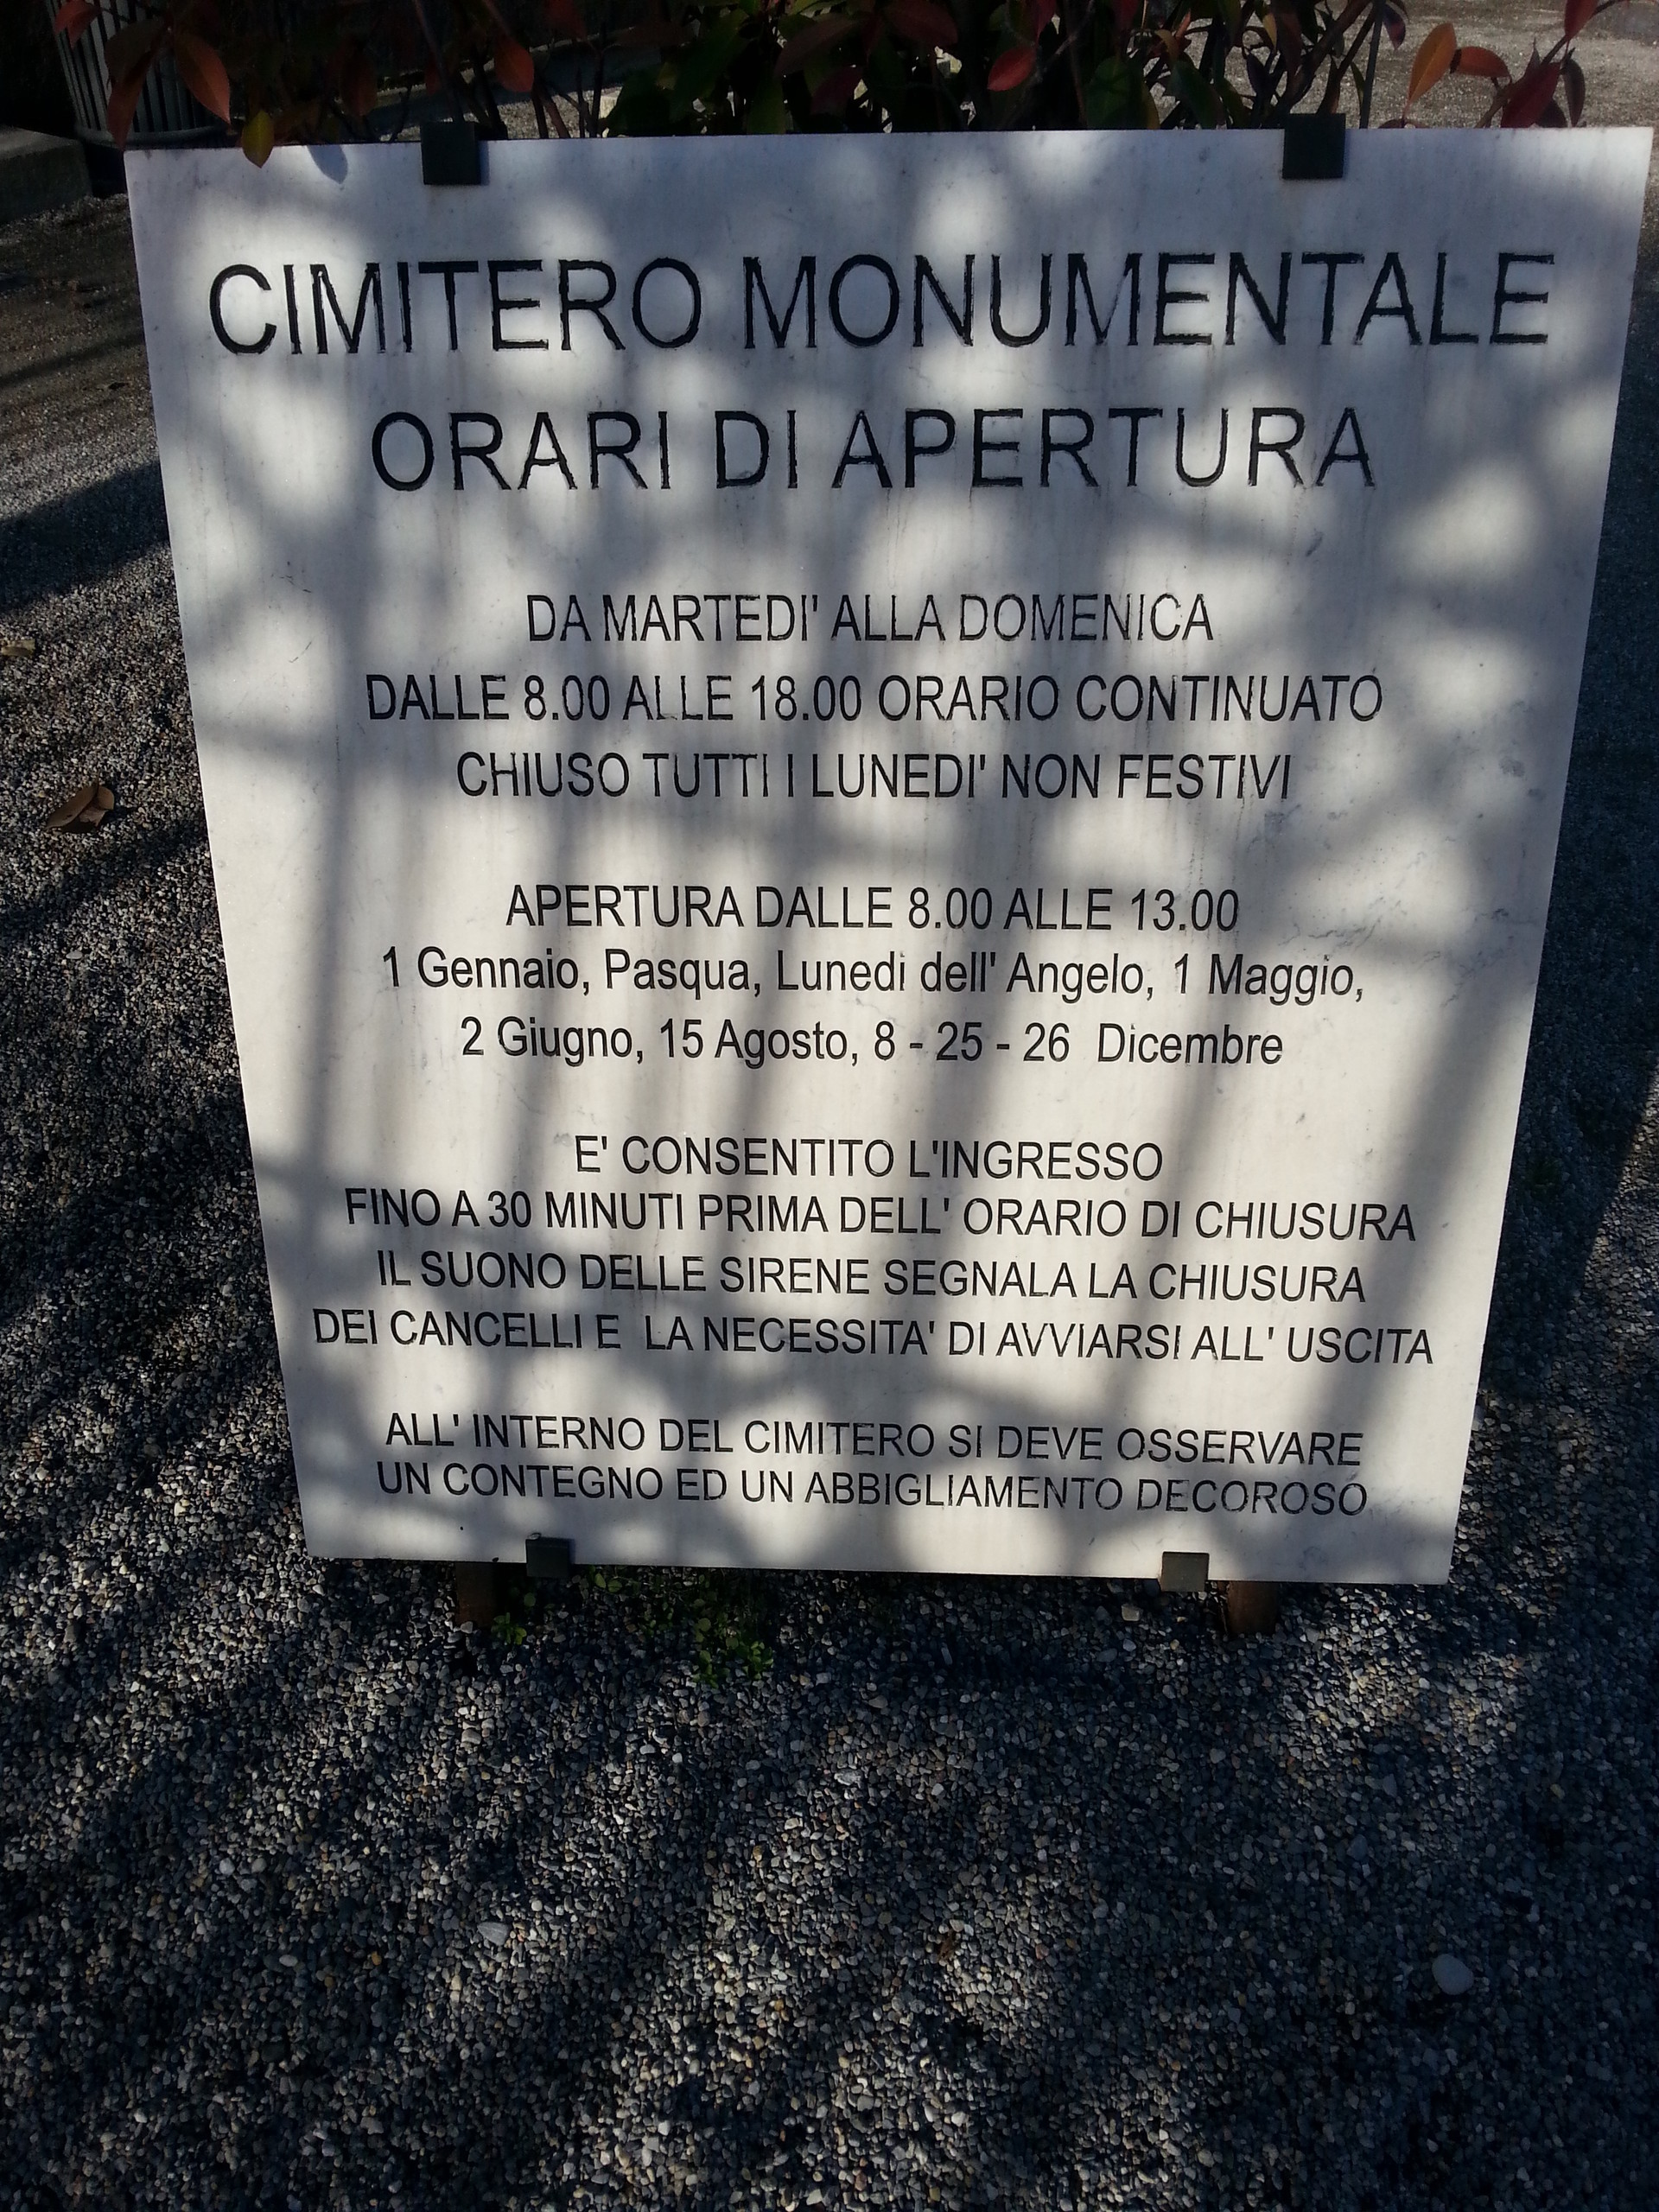 cementerio-monumental-b44faa8f47522b7b8e